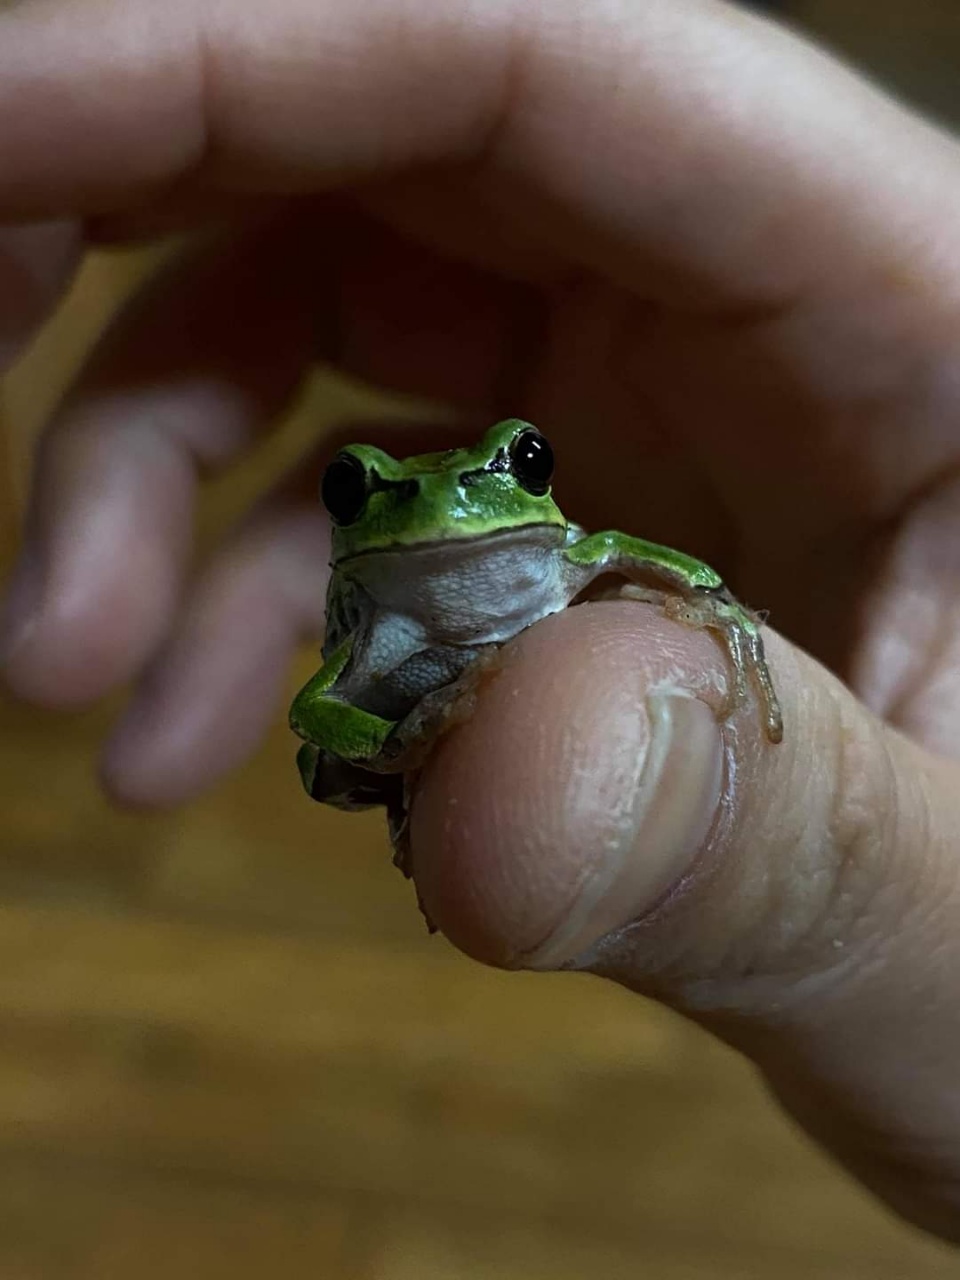 박하는 개구리와 친하다 . 박하 엄지손가락에 올라탄 청개구리(사진 : 박하 제공)